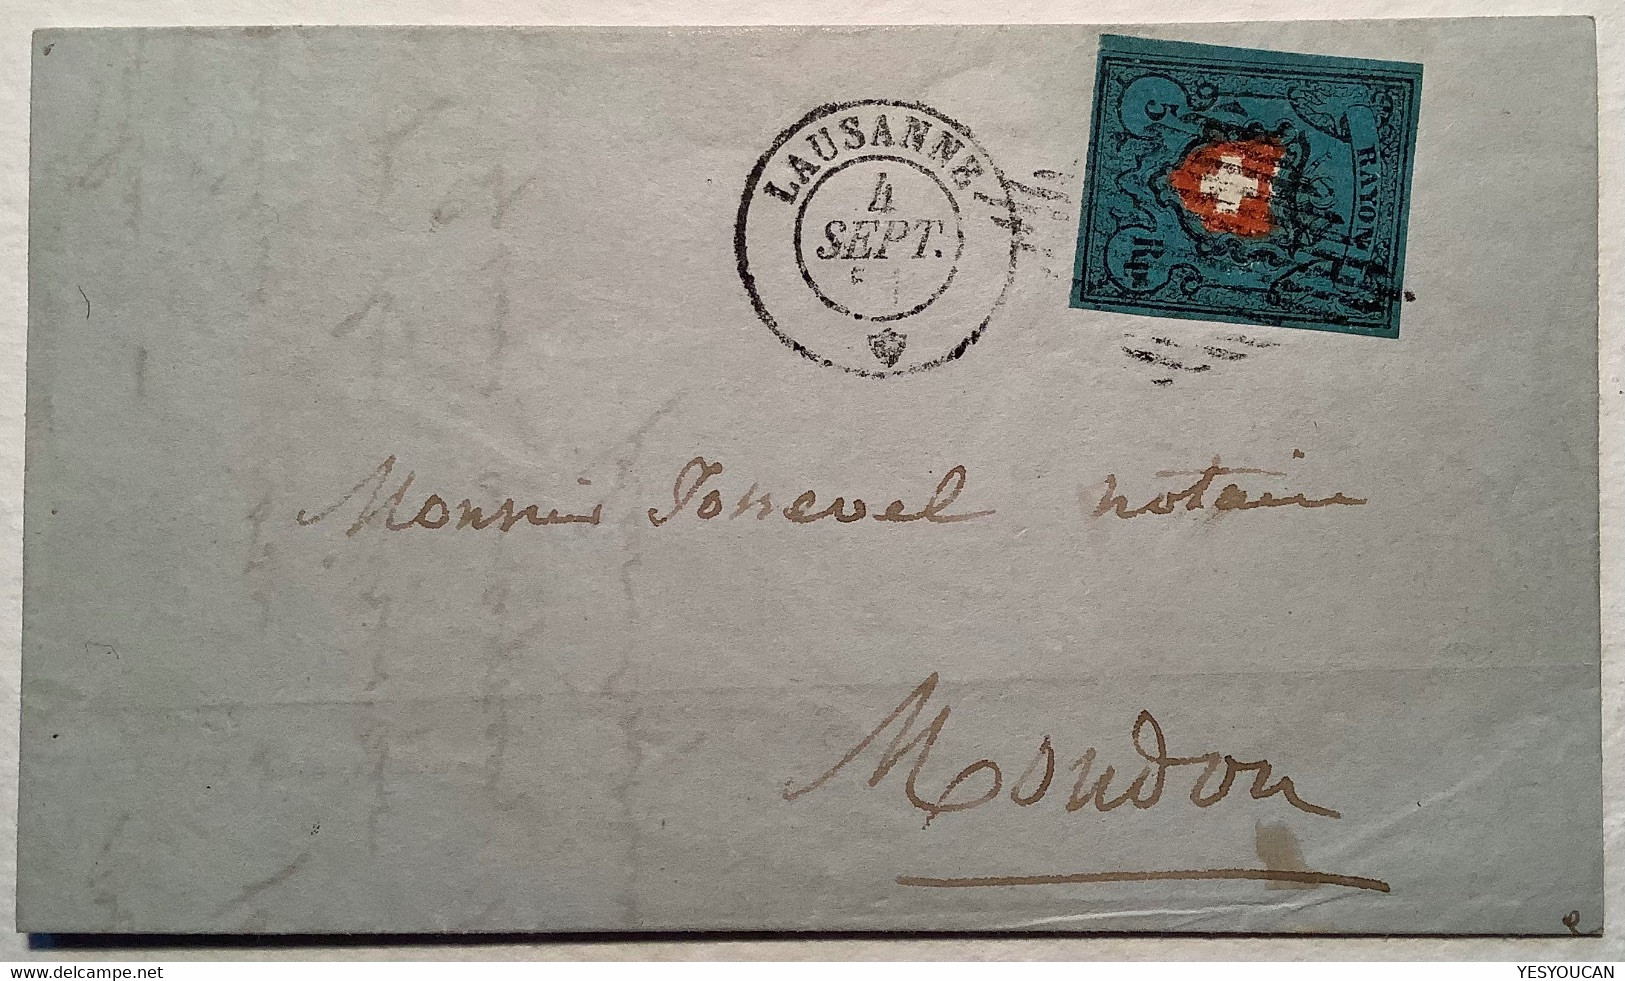 1850 ZNr 15 II, RARITÄT SEHR SPÄTE VERWENDUNG: LAUSANNE SEPT 1851 Brief 5 Rp Rayon I Attest Marchand (Schweiz Suisse VD - 1843-1852 Federal & Cantonal Stamps